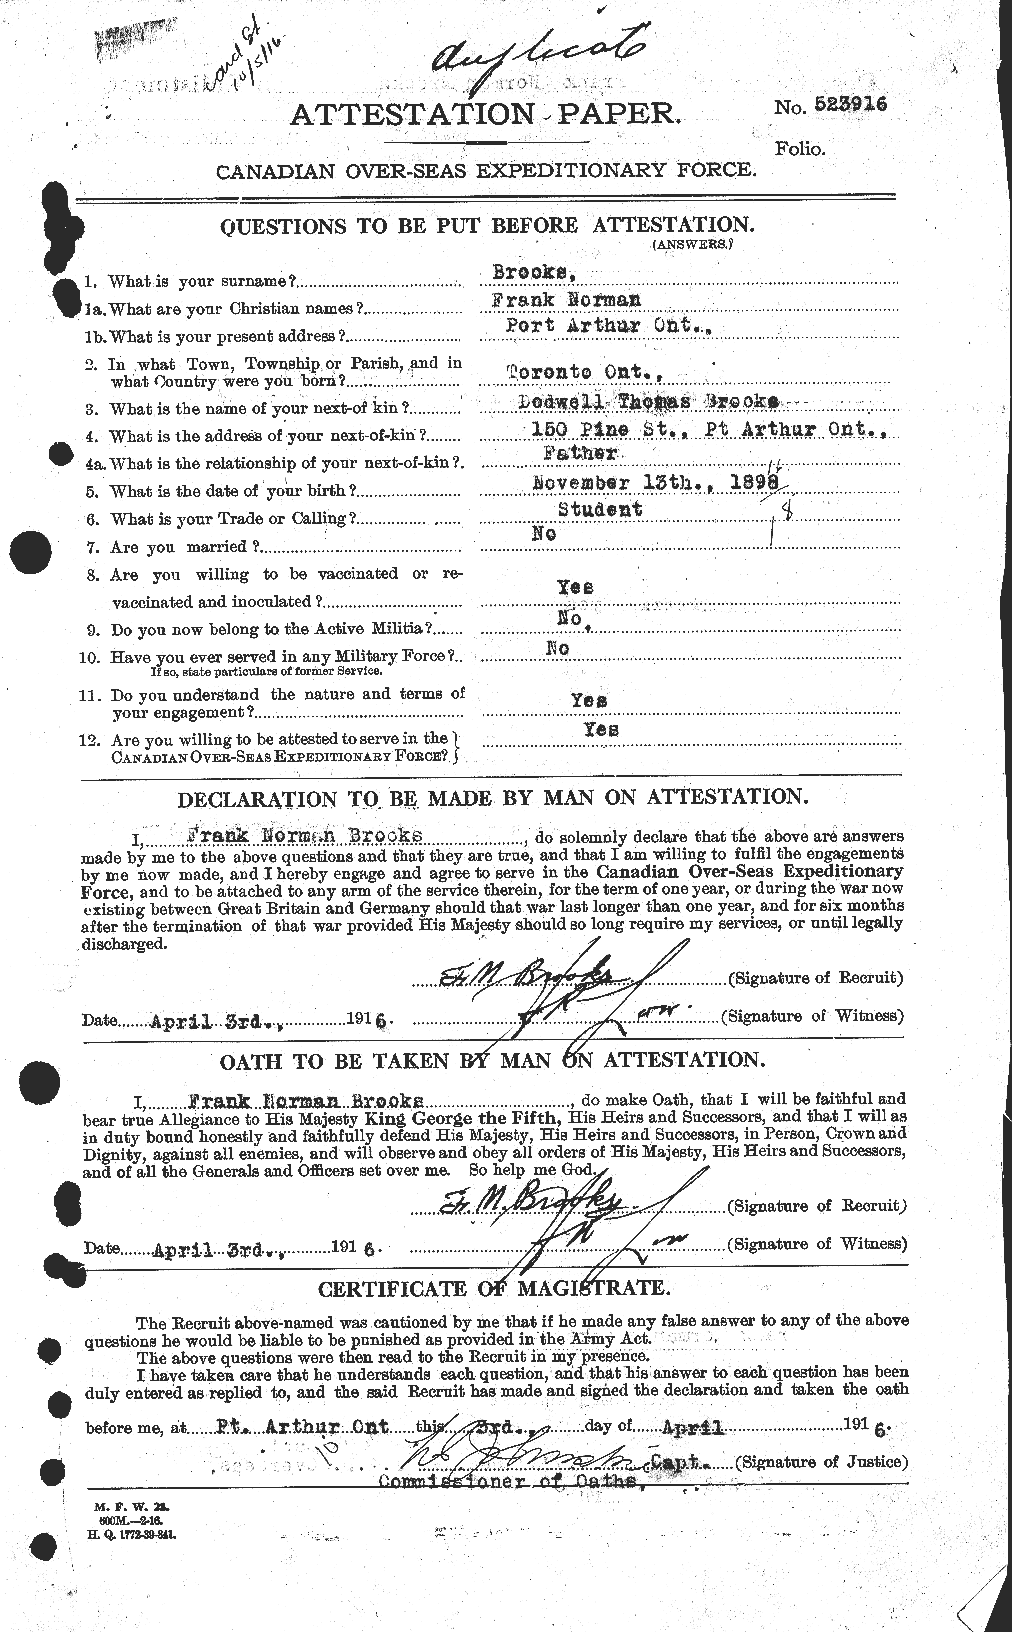 Dossiers du Personnel de la Première Guerre mondiale - CEC 261613a